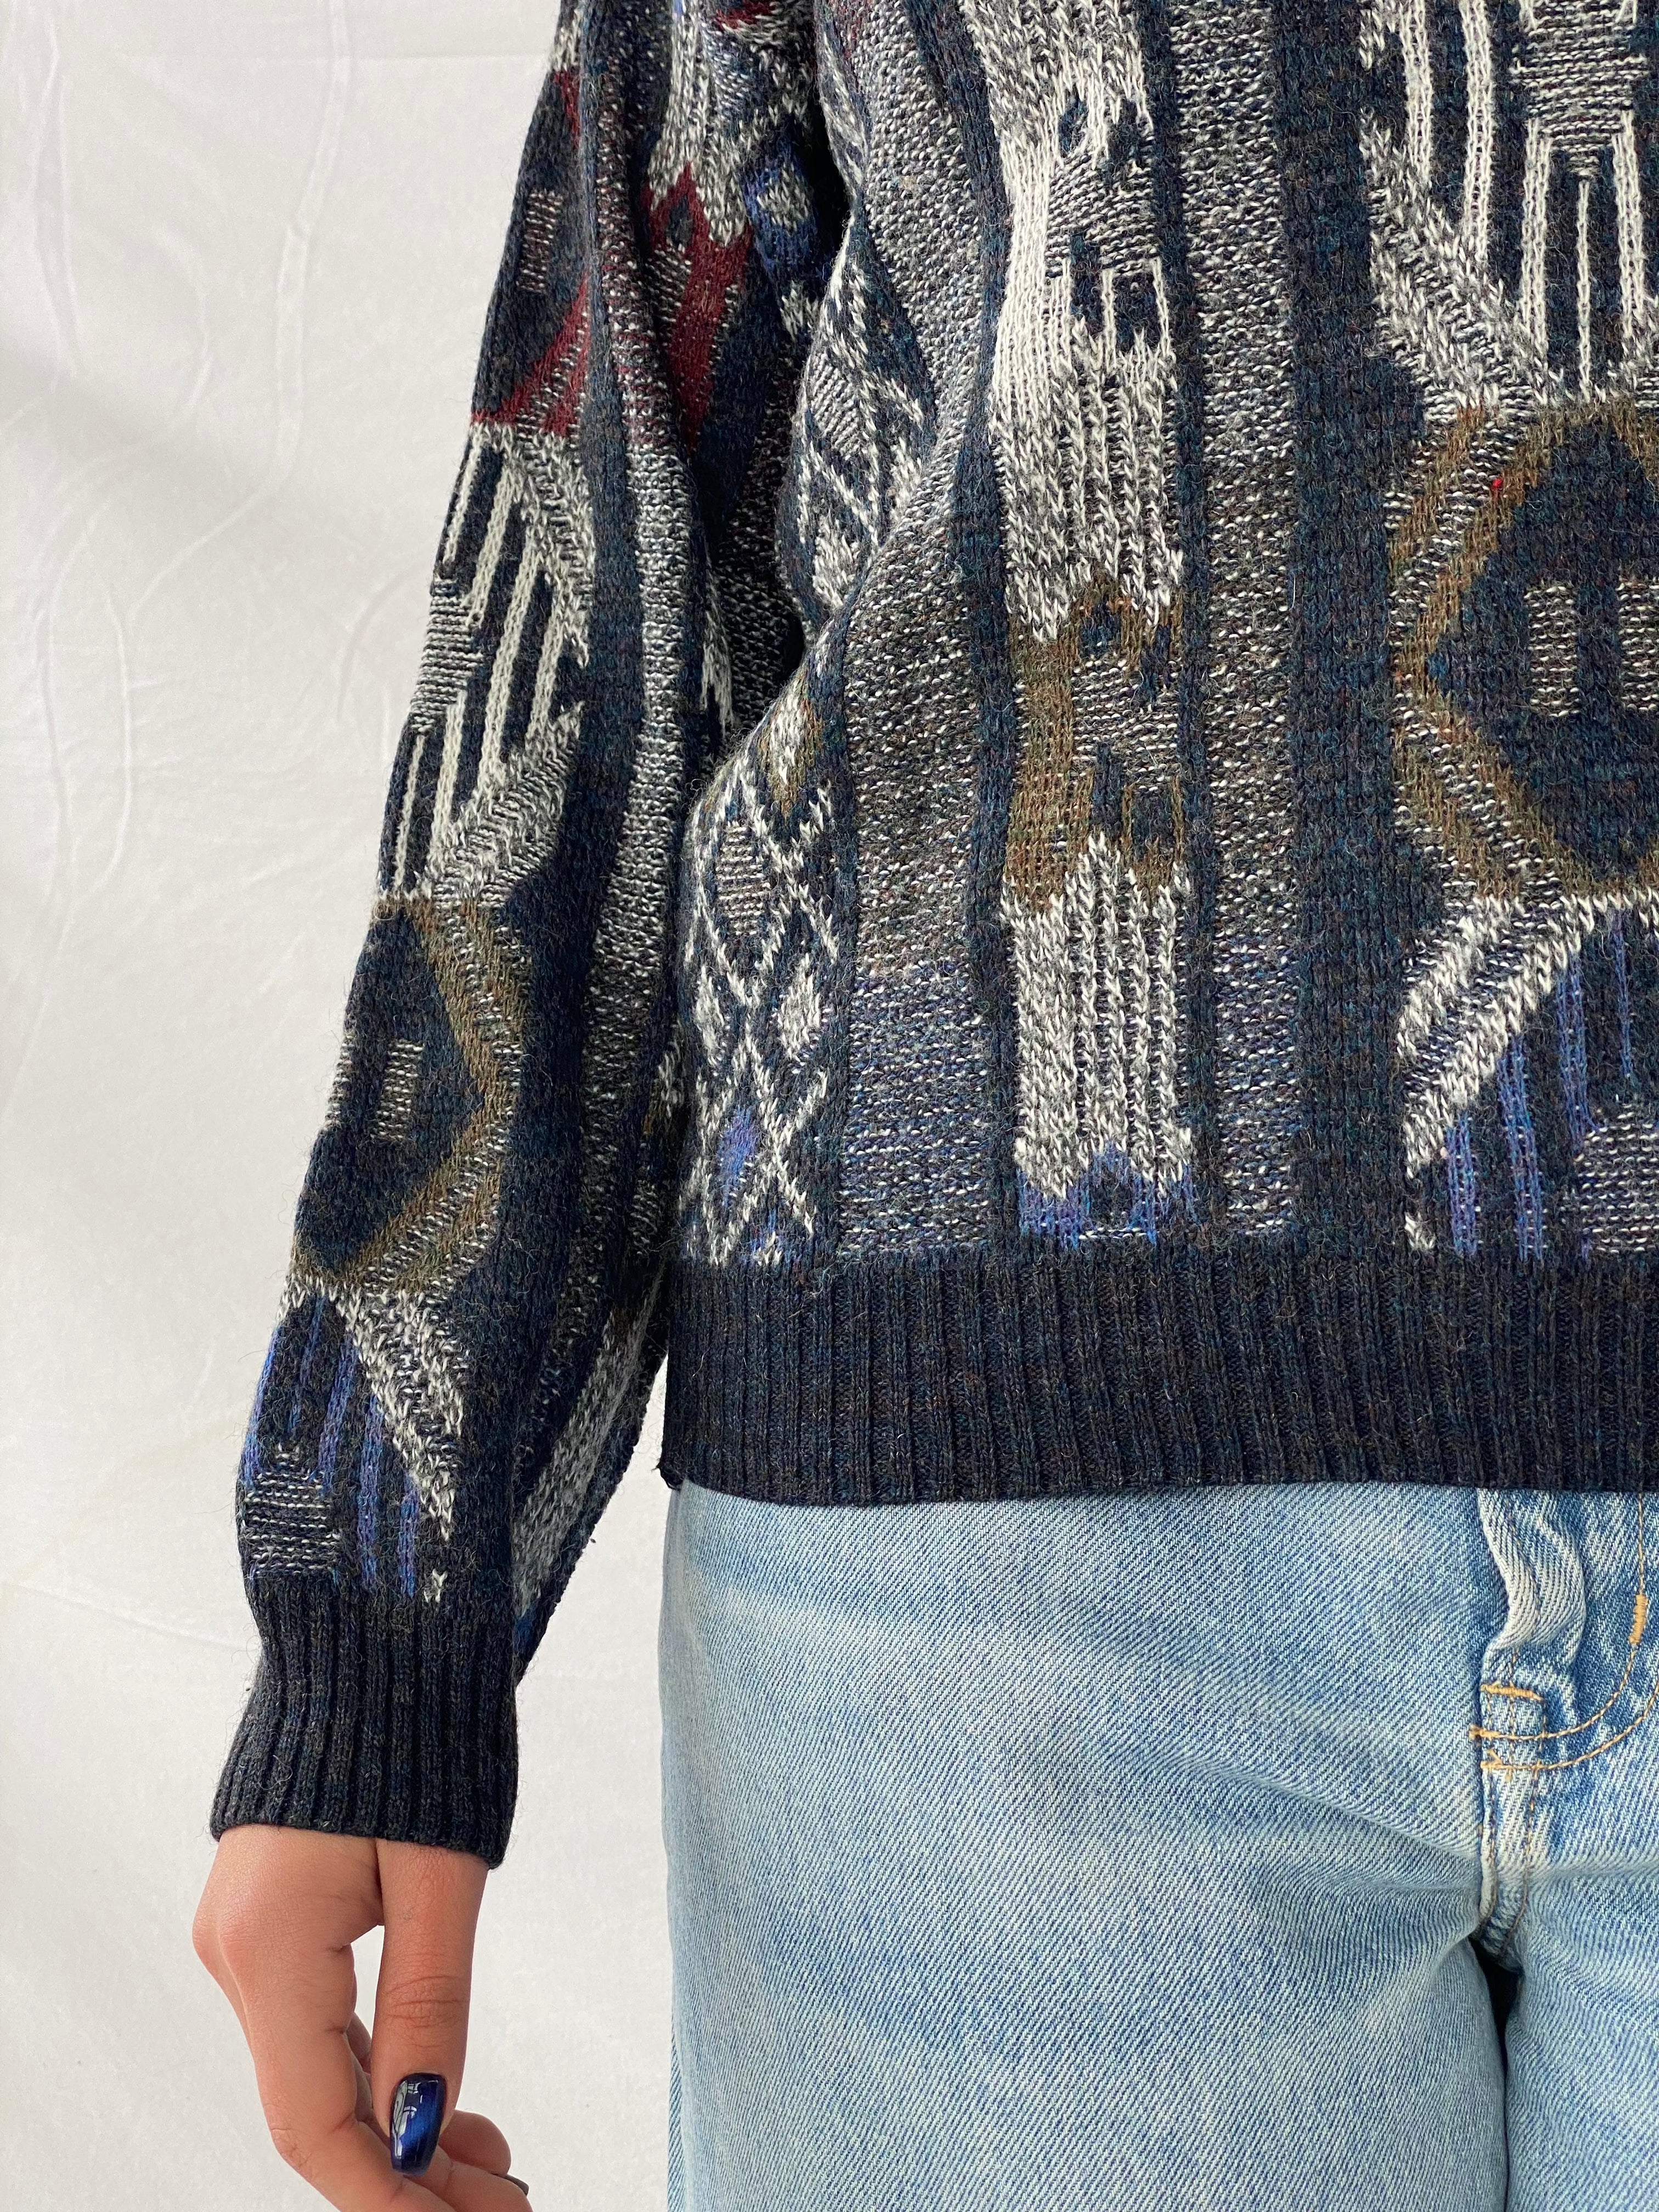 Vintage Knitted Sweater - Balagan Vintage Sweater 90s, knitted sweater, outerwear, sweater